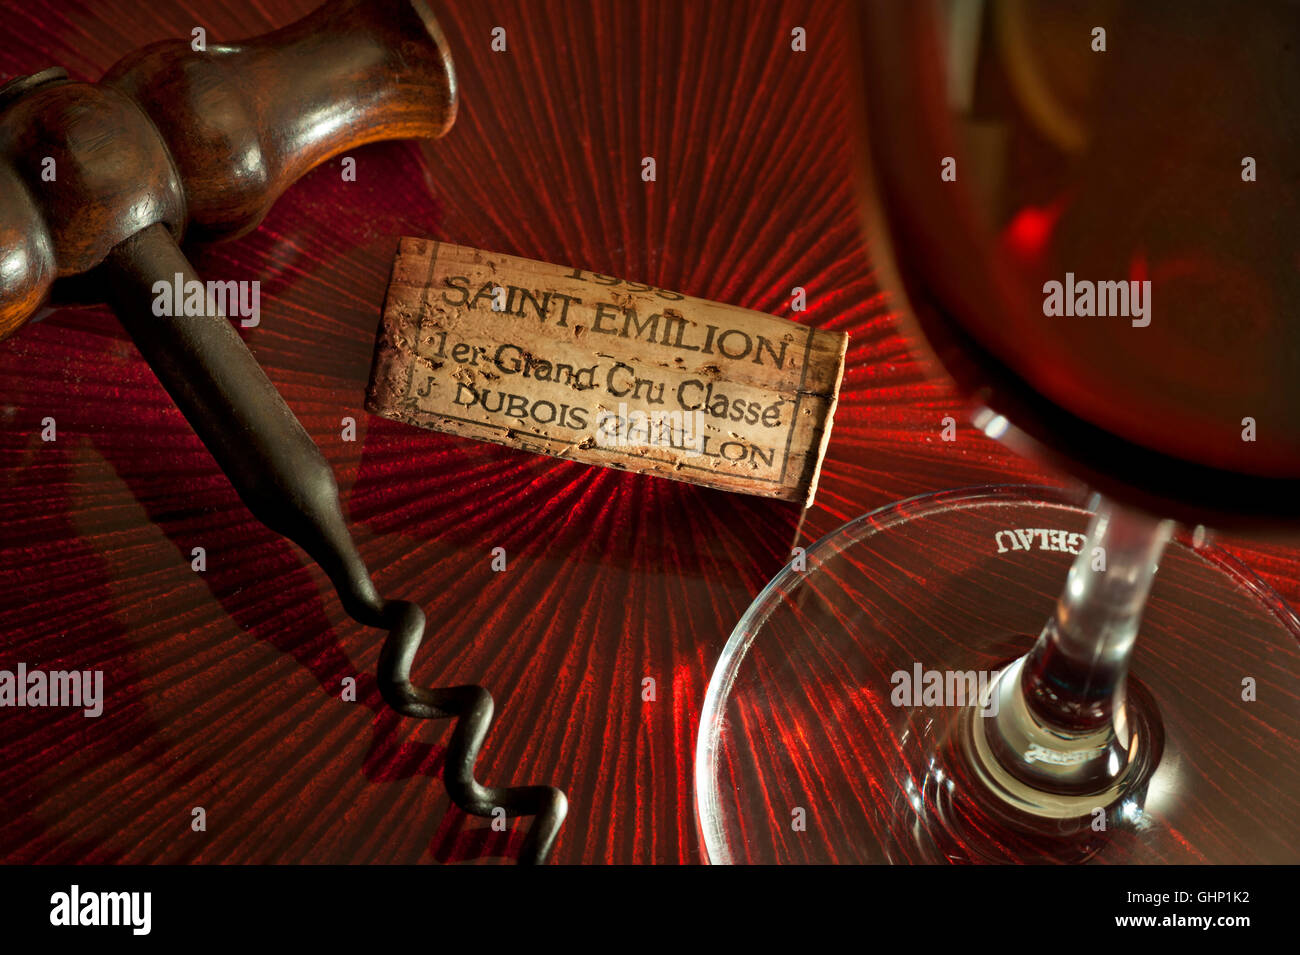 Saint Emilion degustazione vino situazione con cavatappi vino rosso in vetro e Dubois Challon 1er Grand Cru cork Bordeaux ST-Emilion Francia Foto Stock